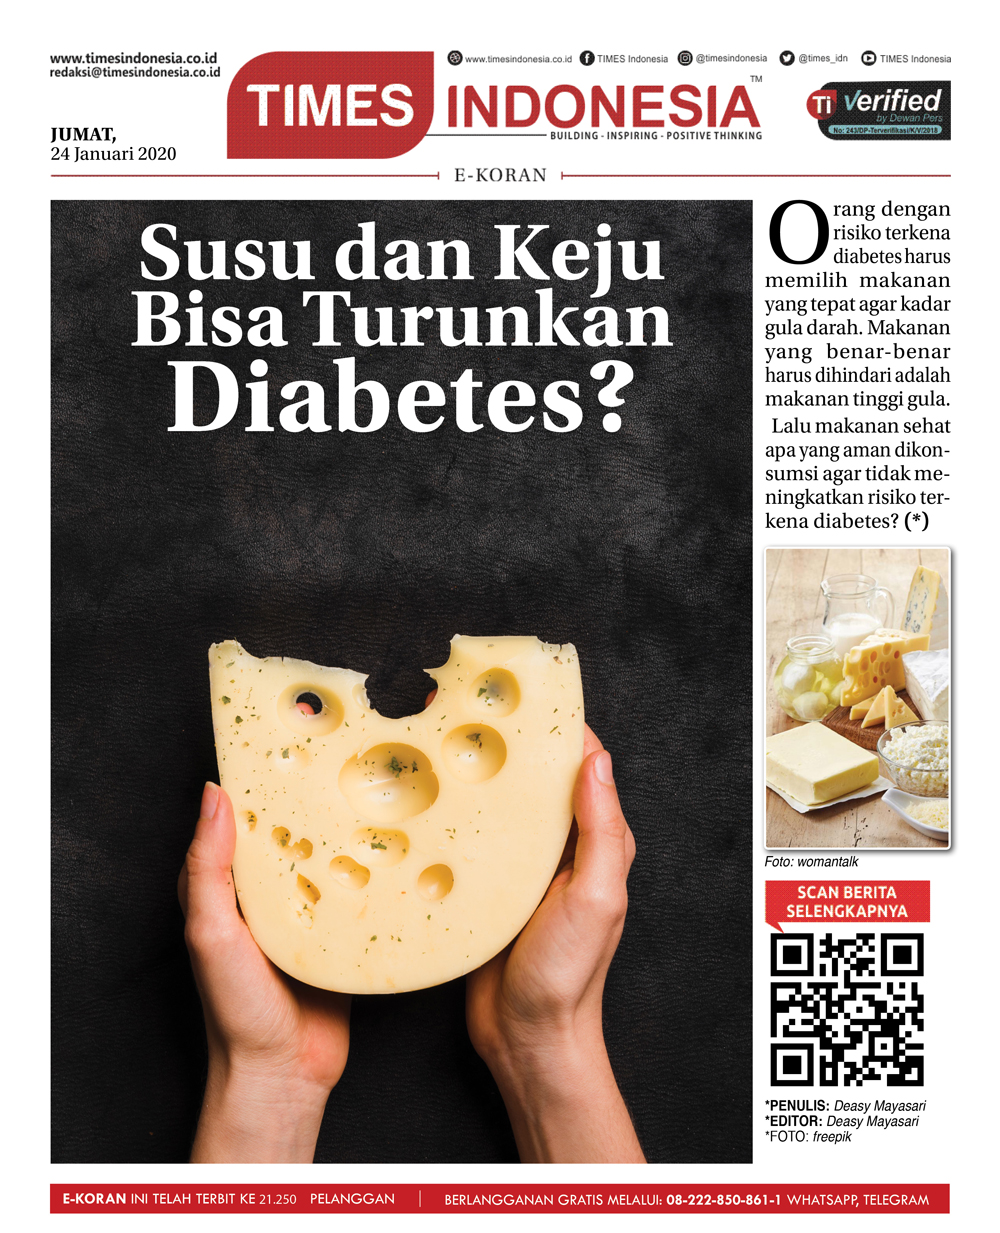 Edisi-Jumat-24-Januari-2020-diabetes.jpg